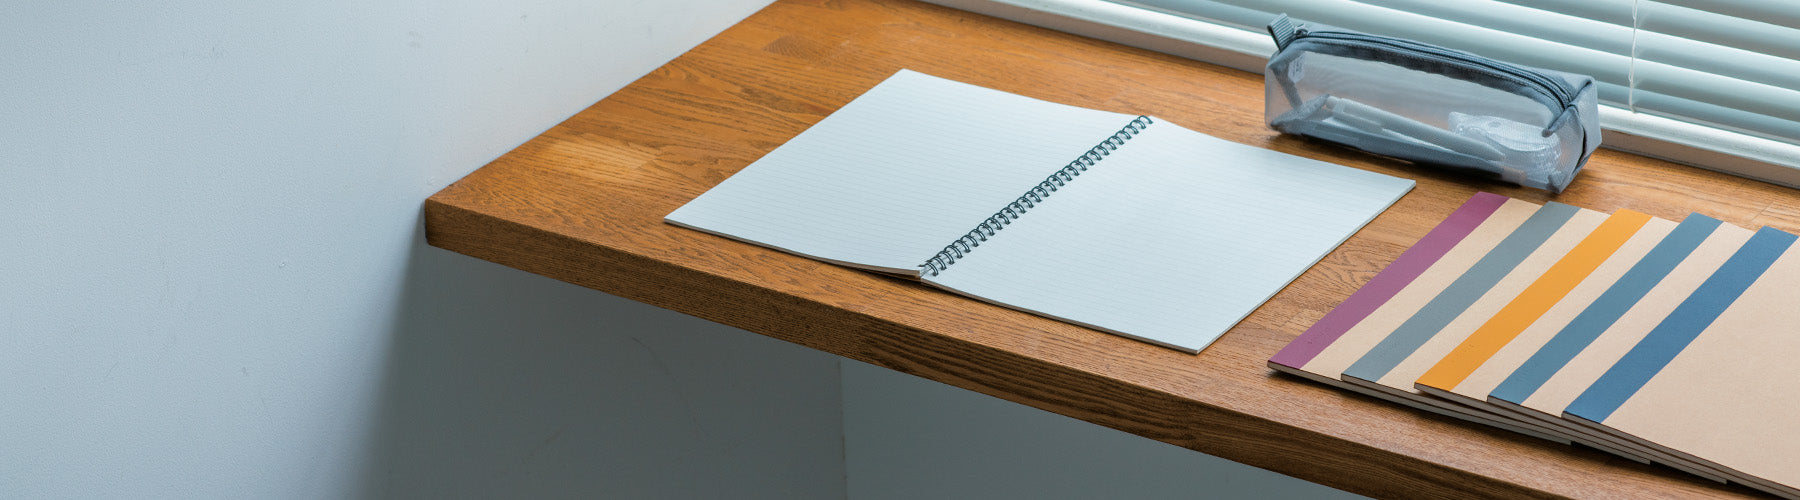 Paper Goods-Notebooks on desk